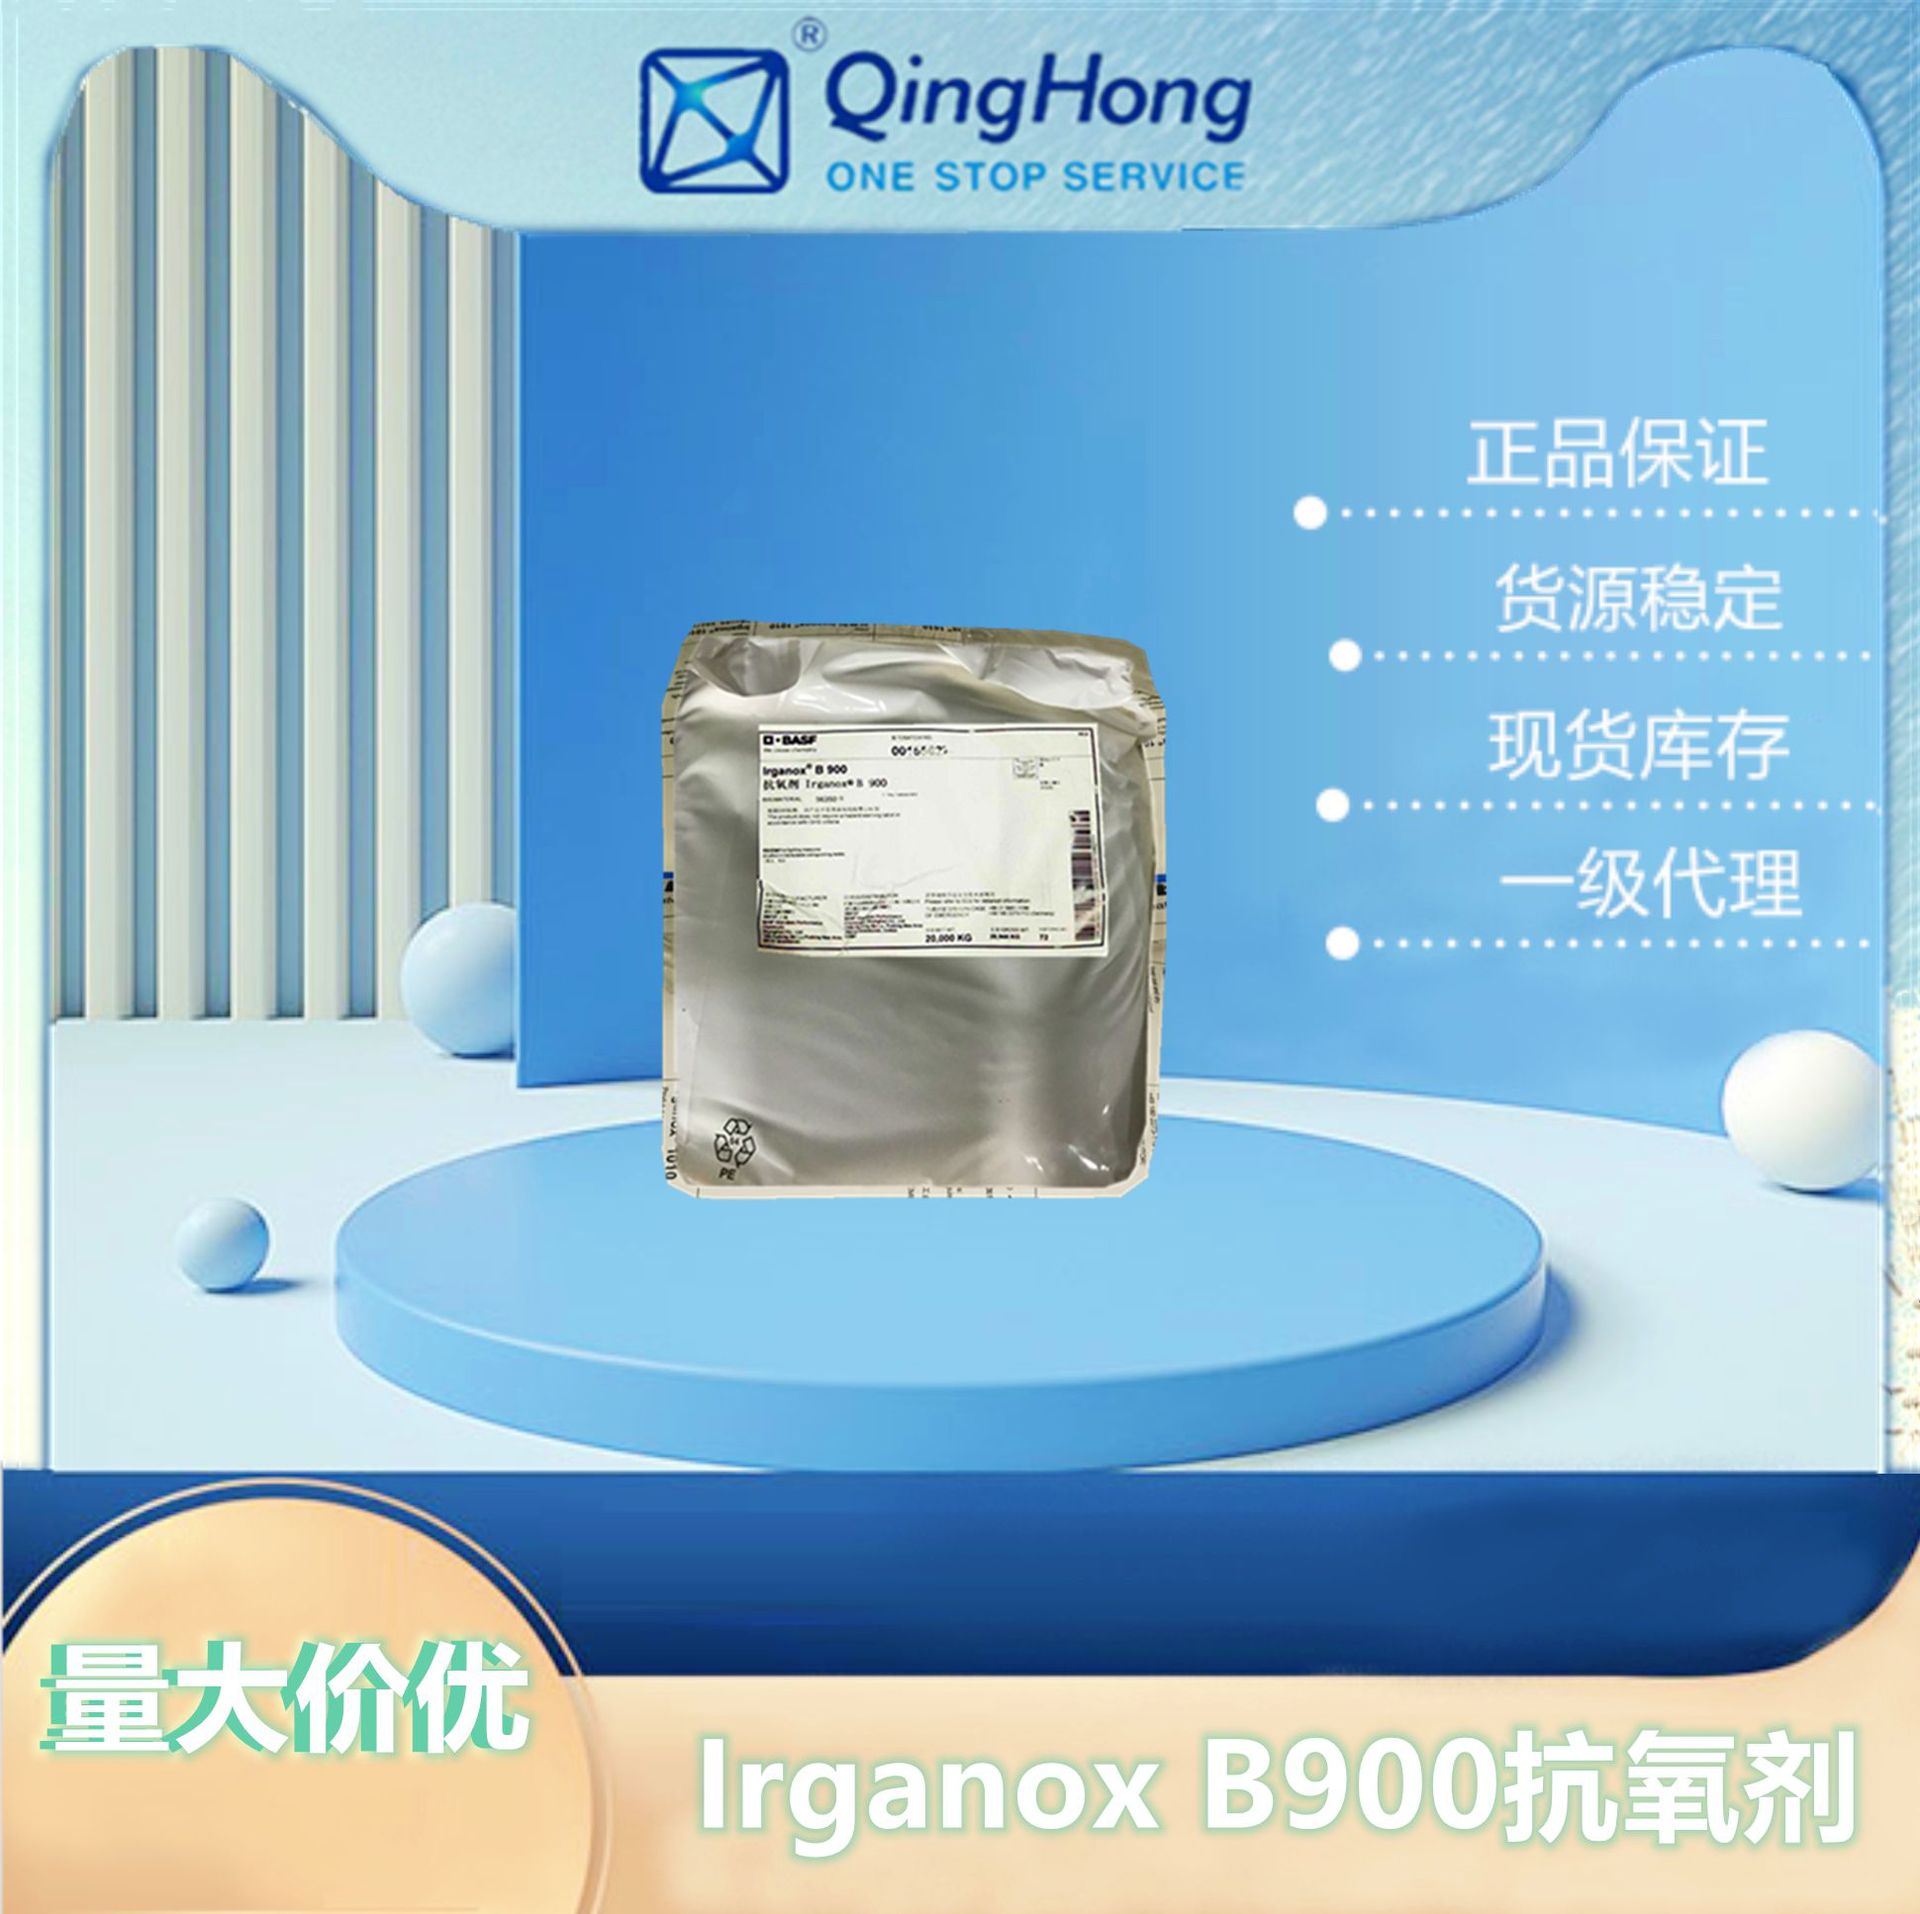 【青虹】巴斯夫Irganox B900高效复合抗氧化剂  复配高效 高温